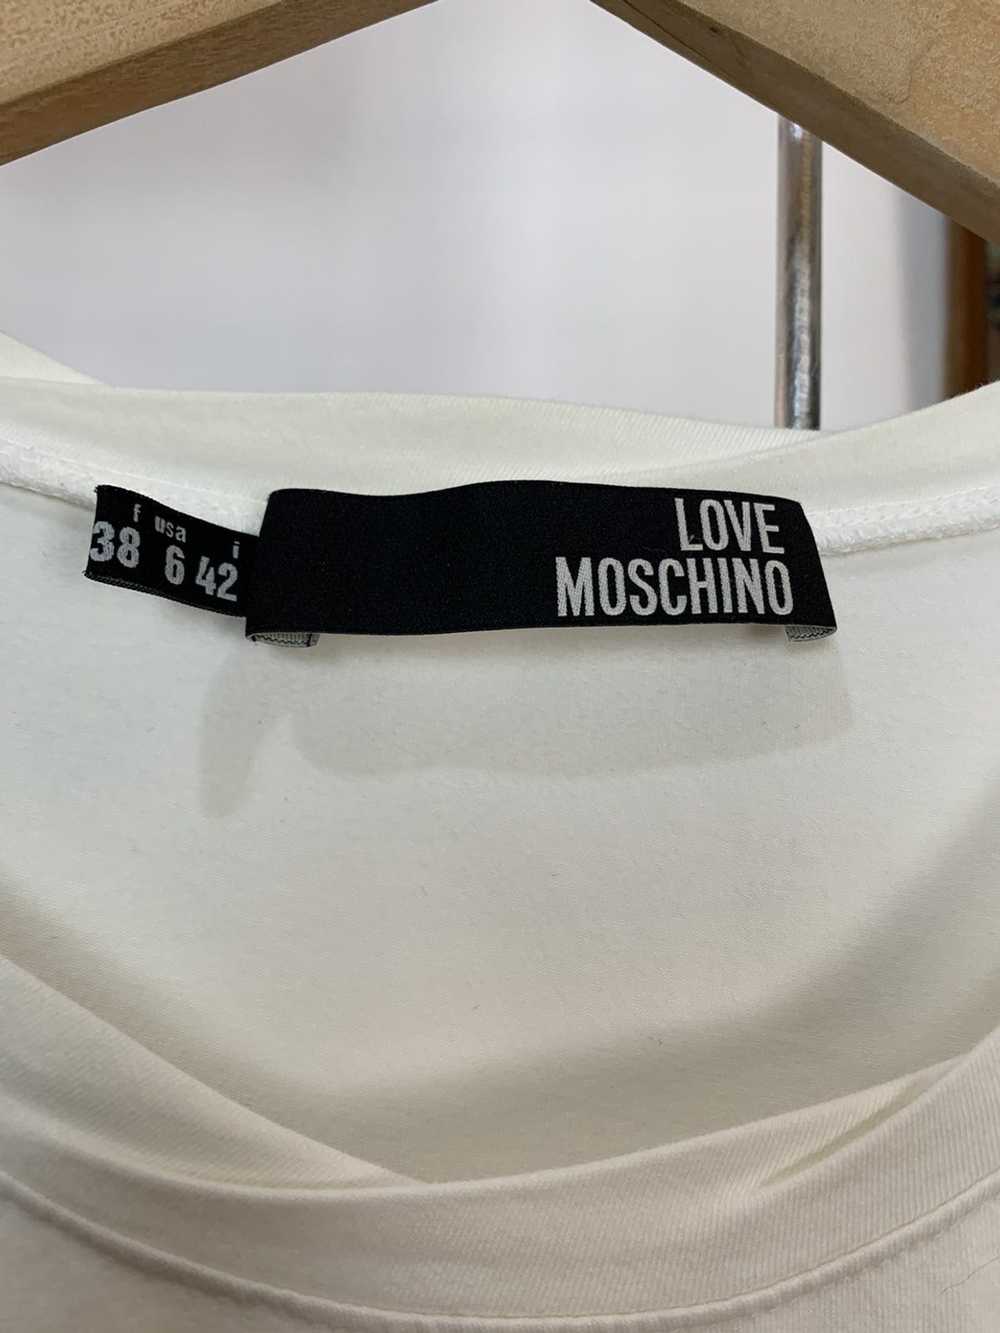 Moschino Love Moschino T-shirt - image 3